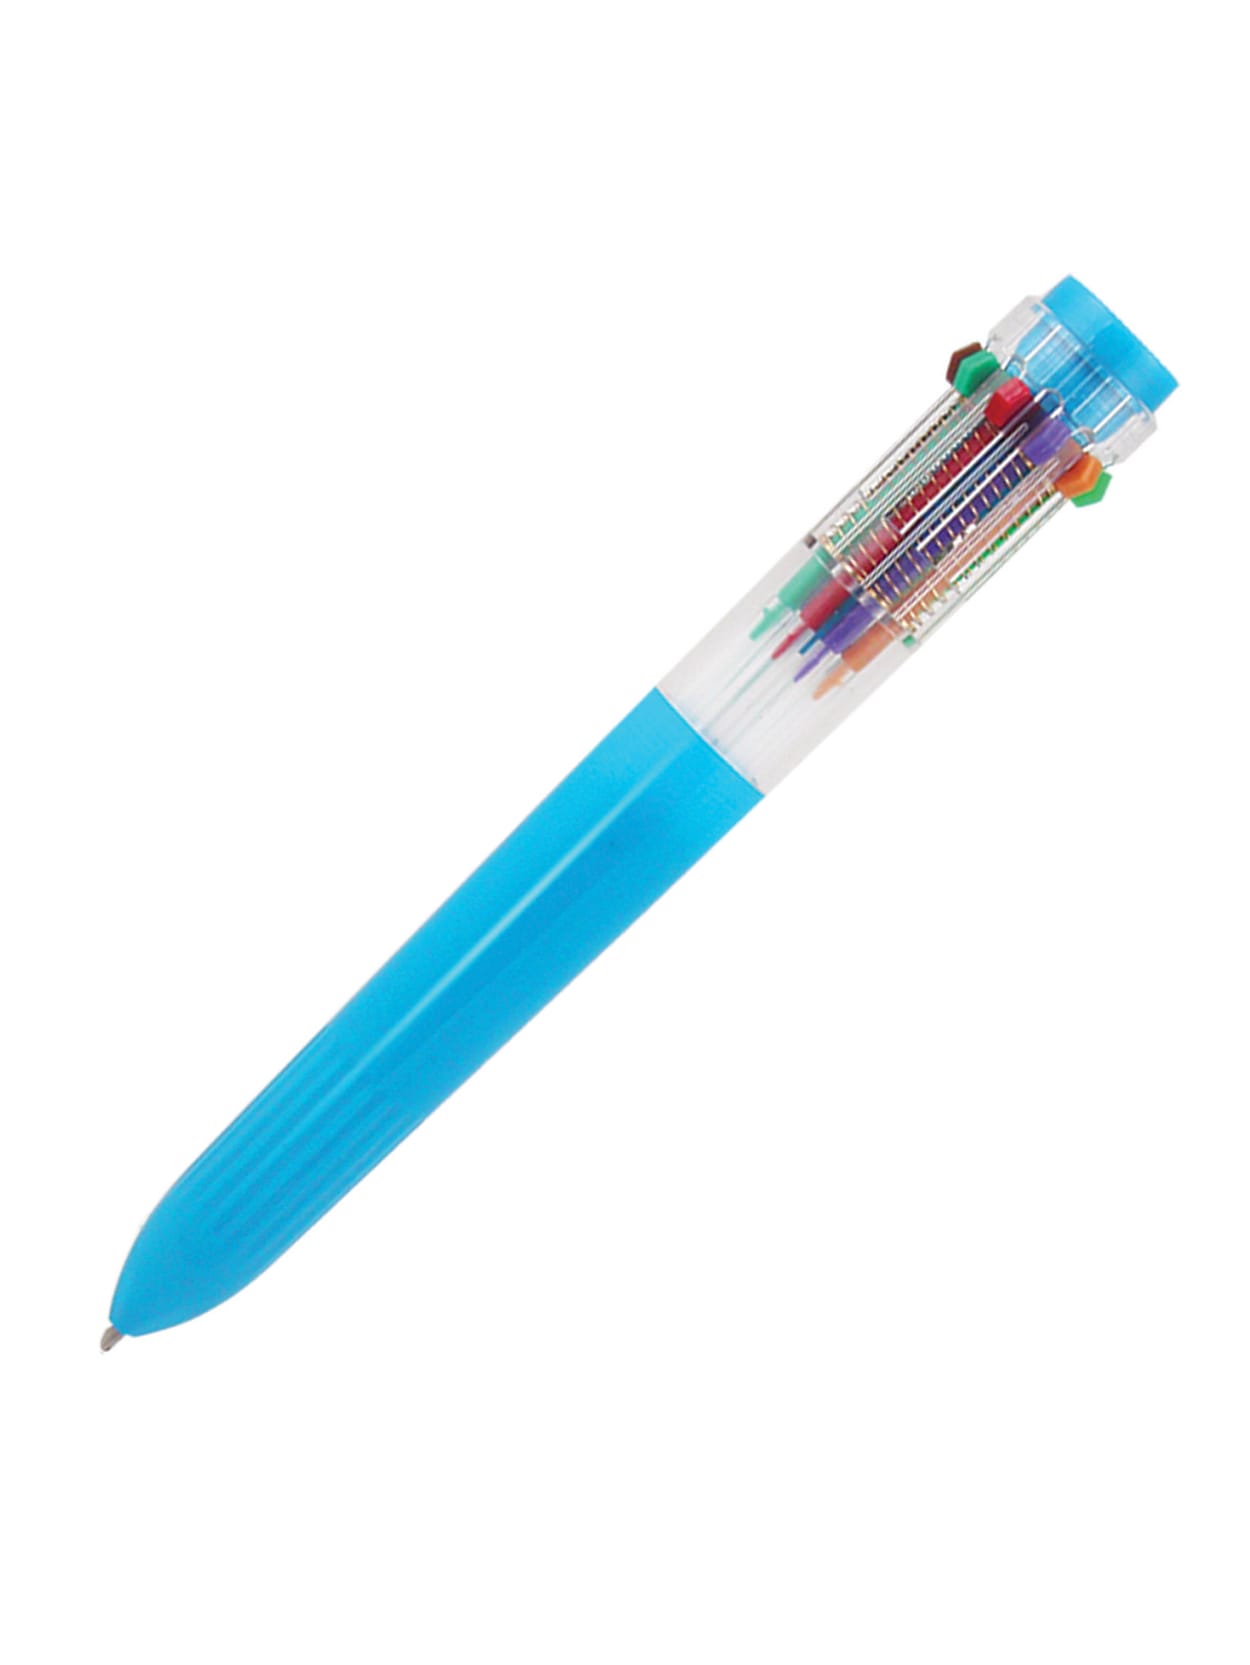 Portable Multi-function Pen Glass Breaker Pens Refill Pen Multipurpose Office